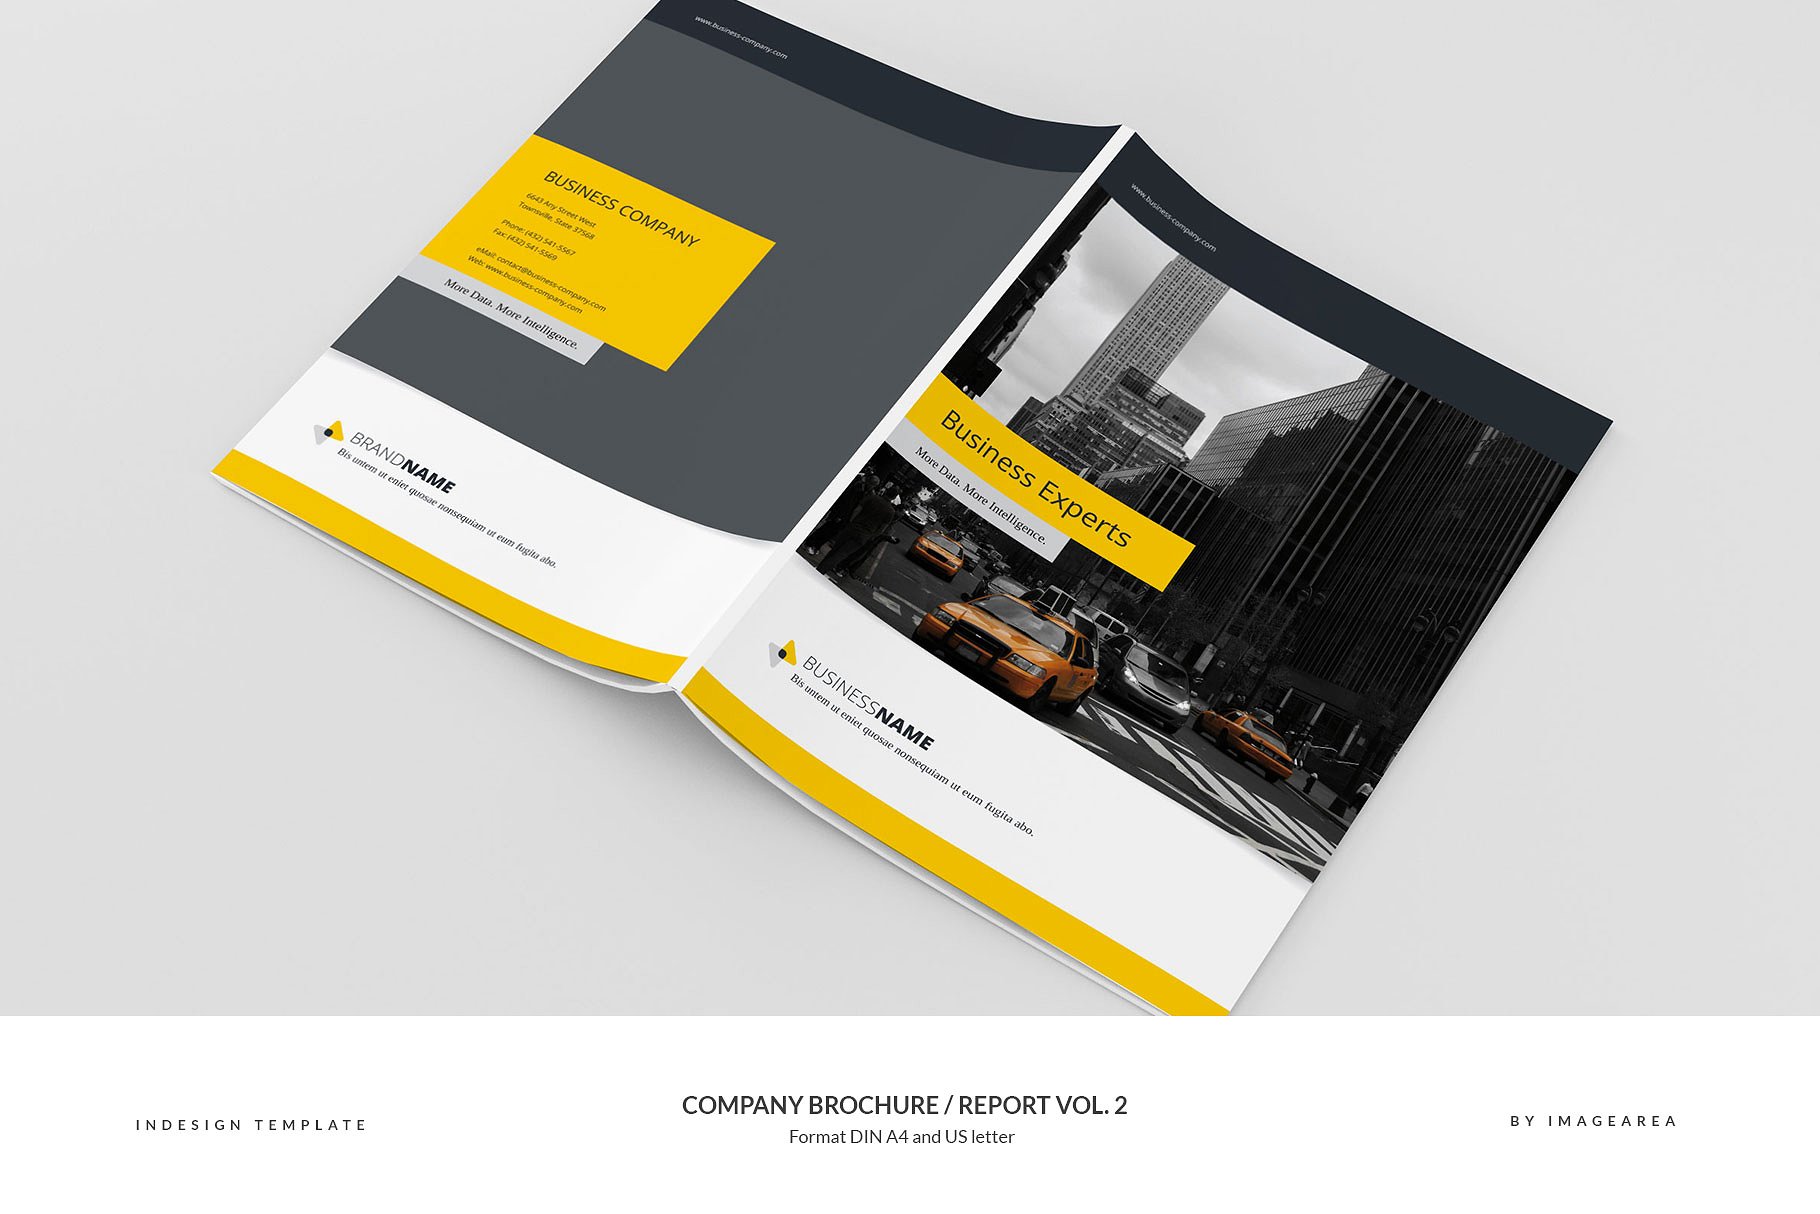 企业品牌宣传画册/企业年报设计模板v2 Company Brochure / Report Vol. 2插图(1)